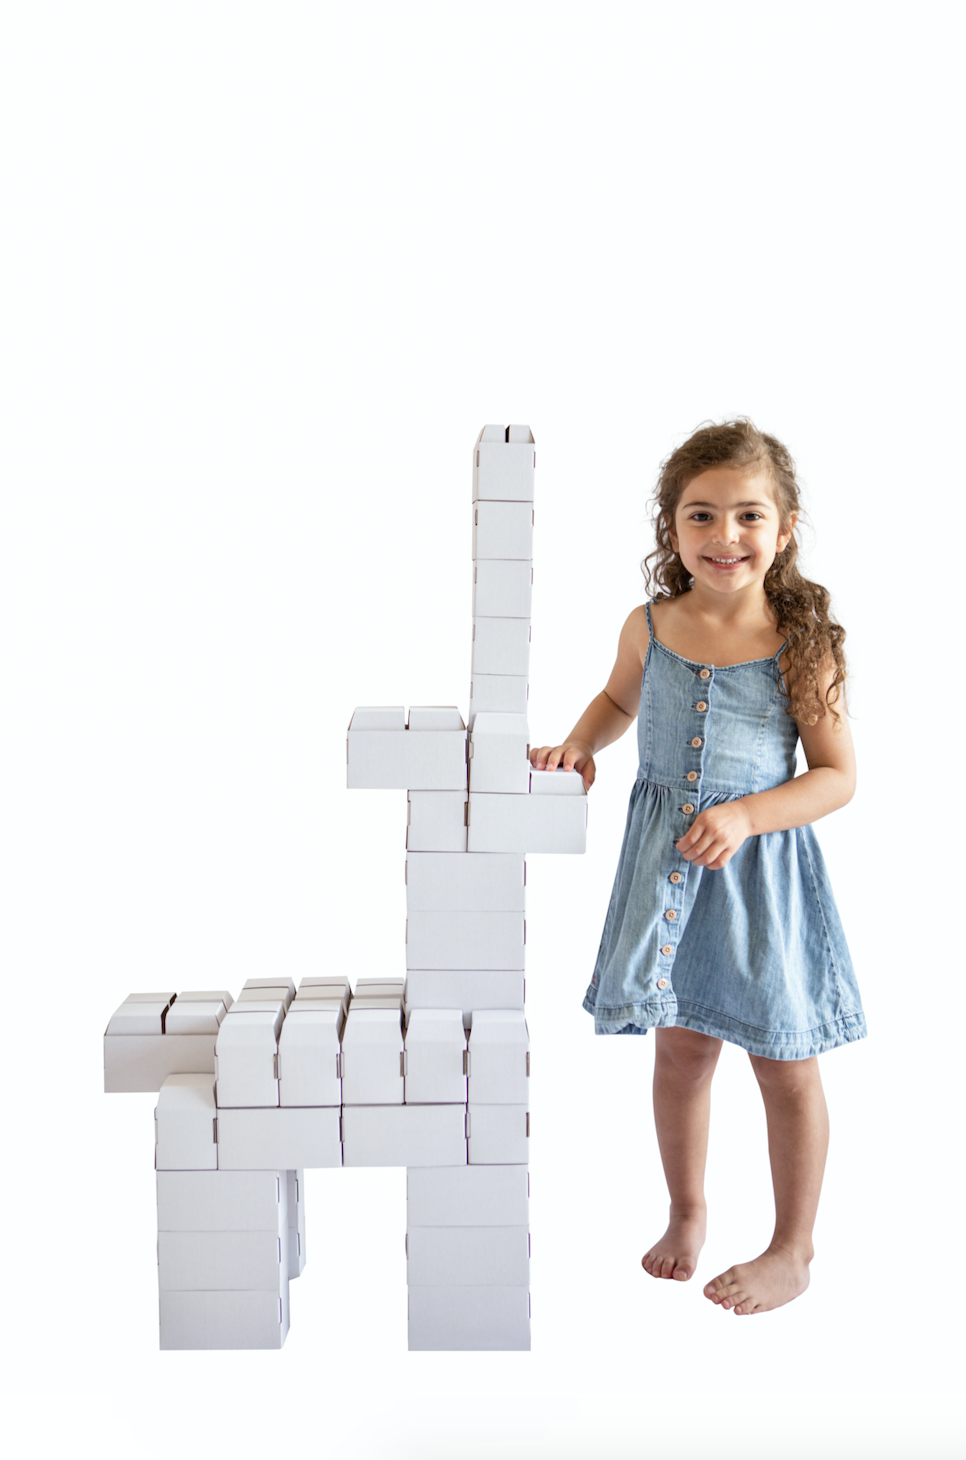 Rikbits cardboard interlocking bricks (100 Pieces) – White